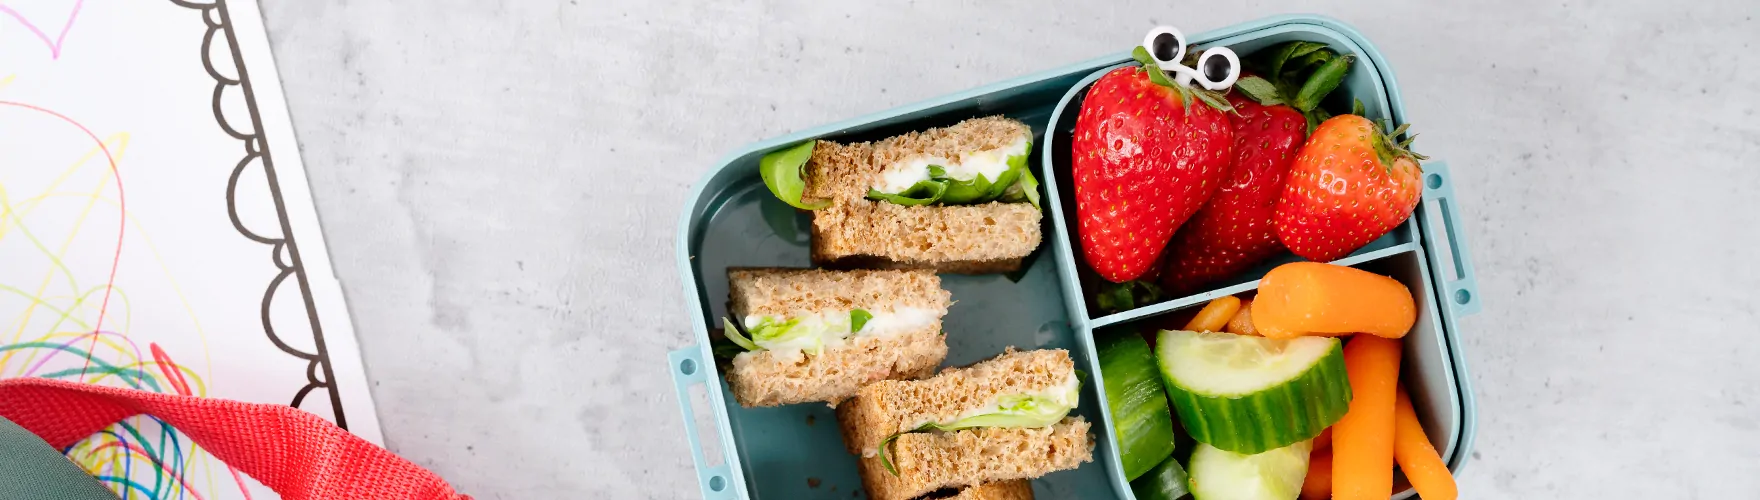 Kids lunchbox met aardbeien, komkommer, wortel en mini sandwiches met smeerkaas